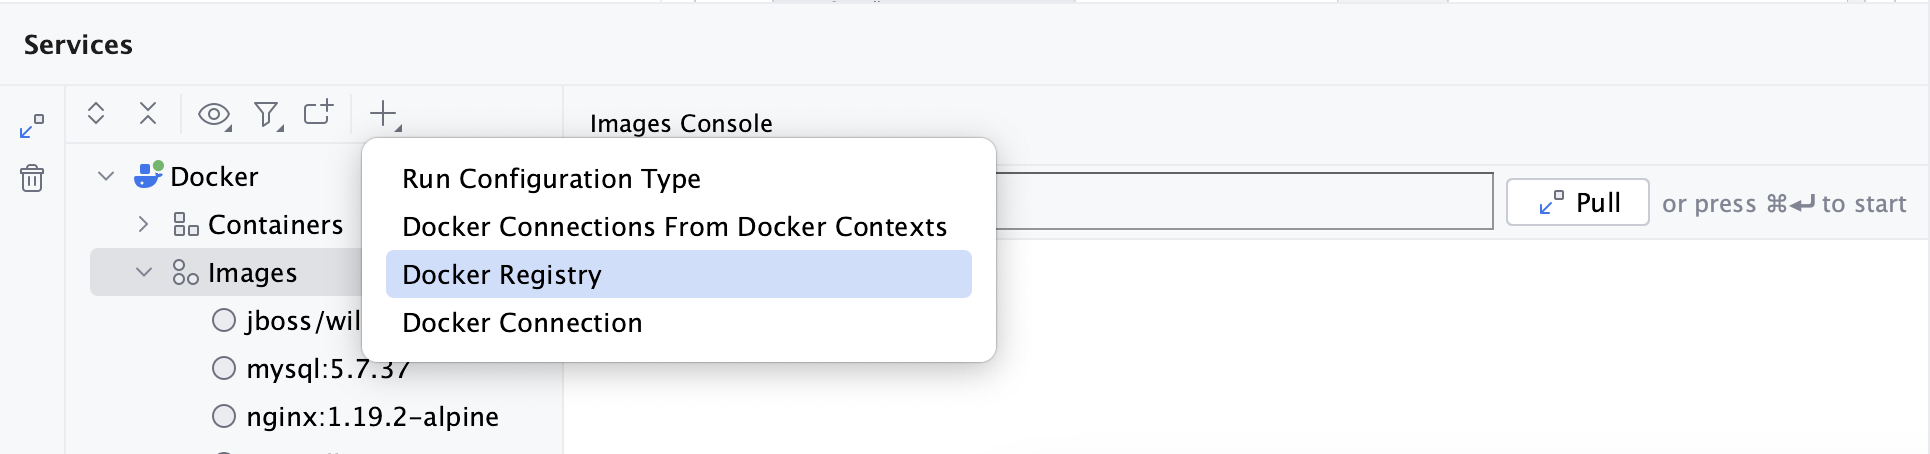 服务工具窗口 - 添加 Docker 注册表